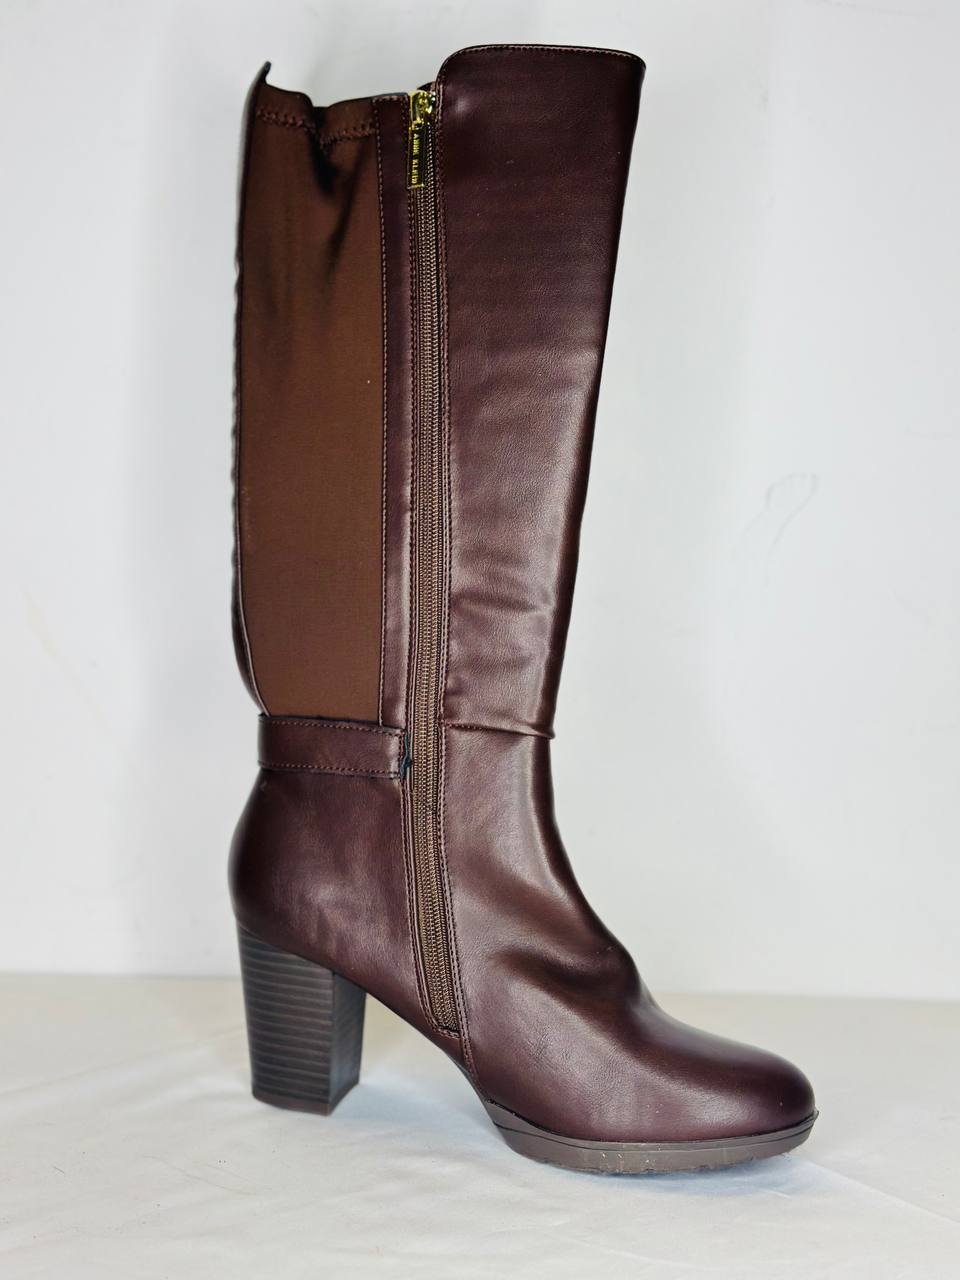 Annie Klein boots